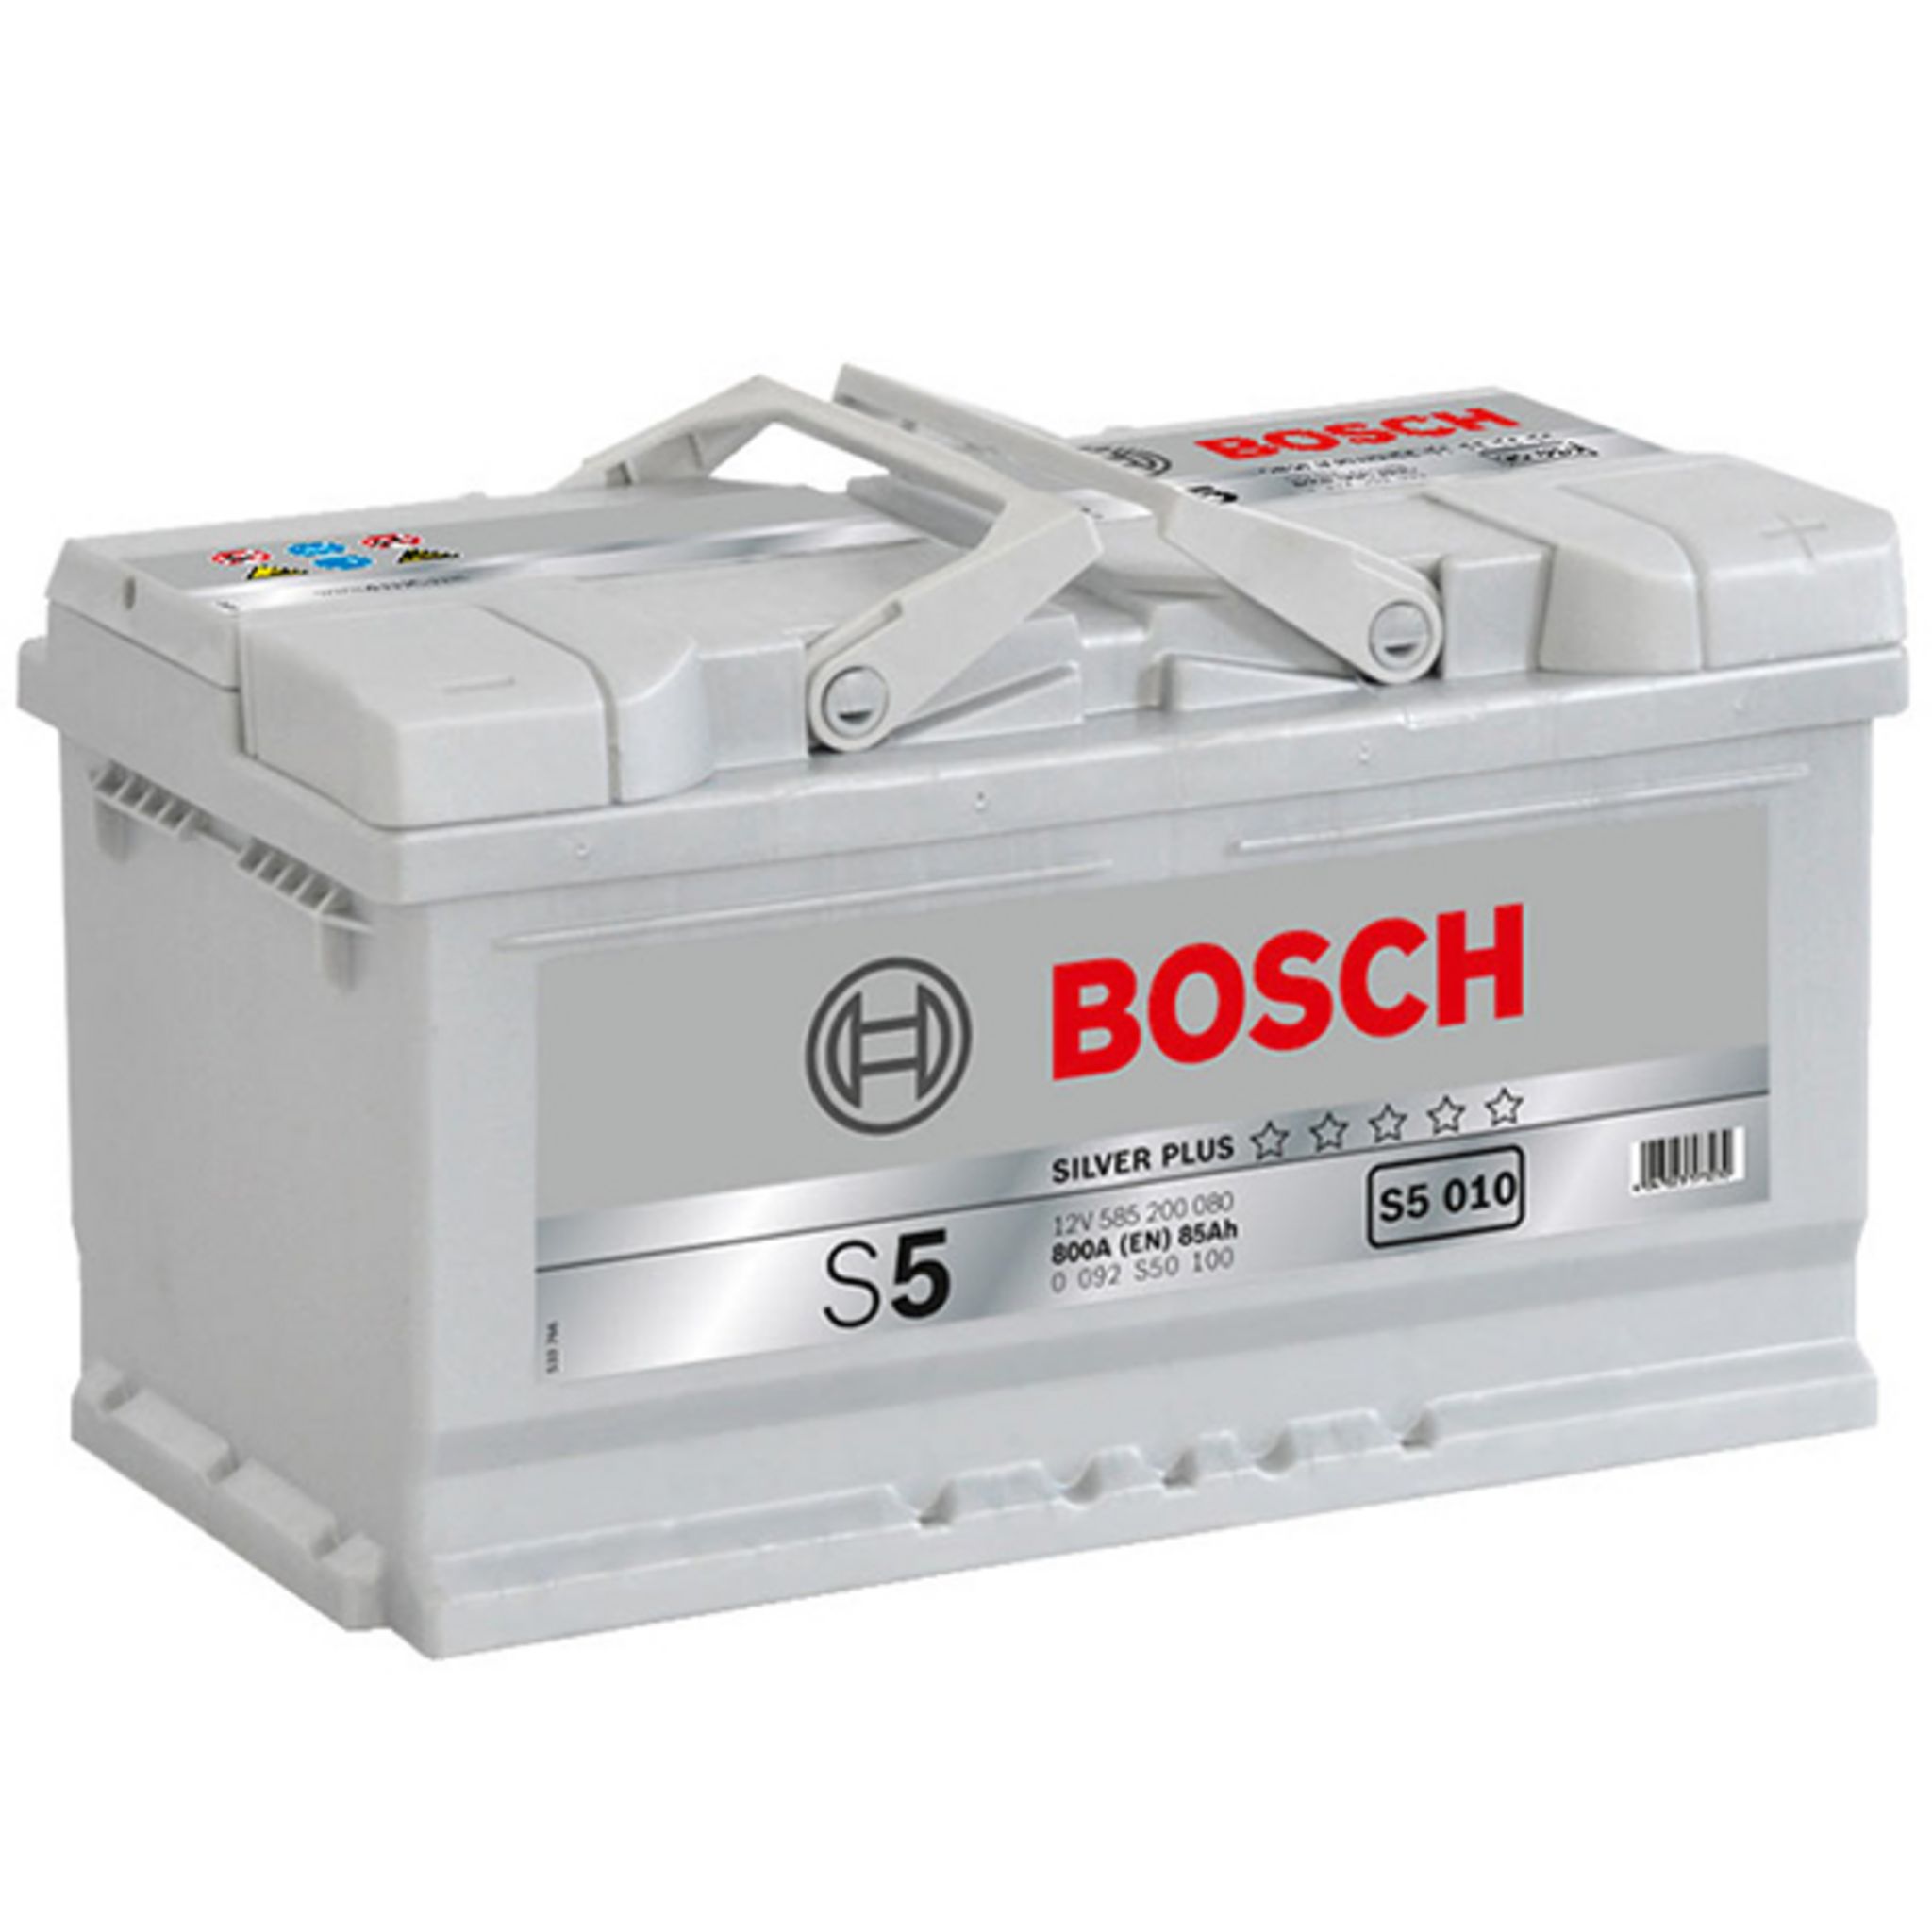 Аккумулятор автомобильный 50. 0092s50100 Bosch аккумулятор автомобильный. 0092s50150 Bosch. Аккумулятор Bosch 0092s50040. Аккумулятор Bosch 0092s30020.